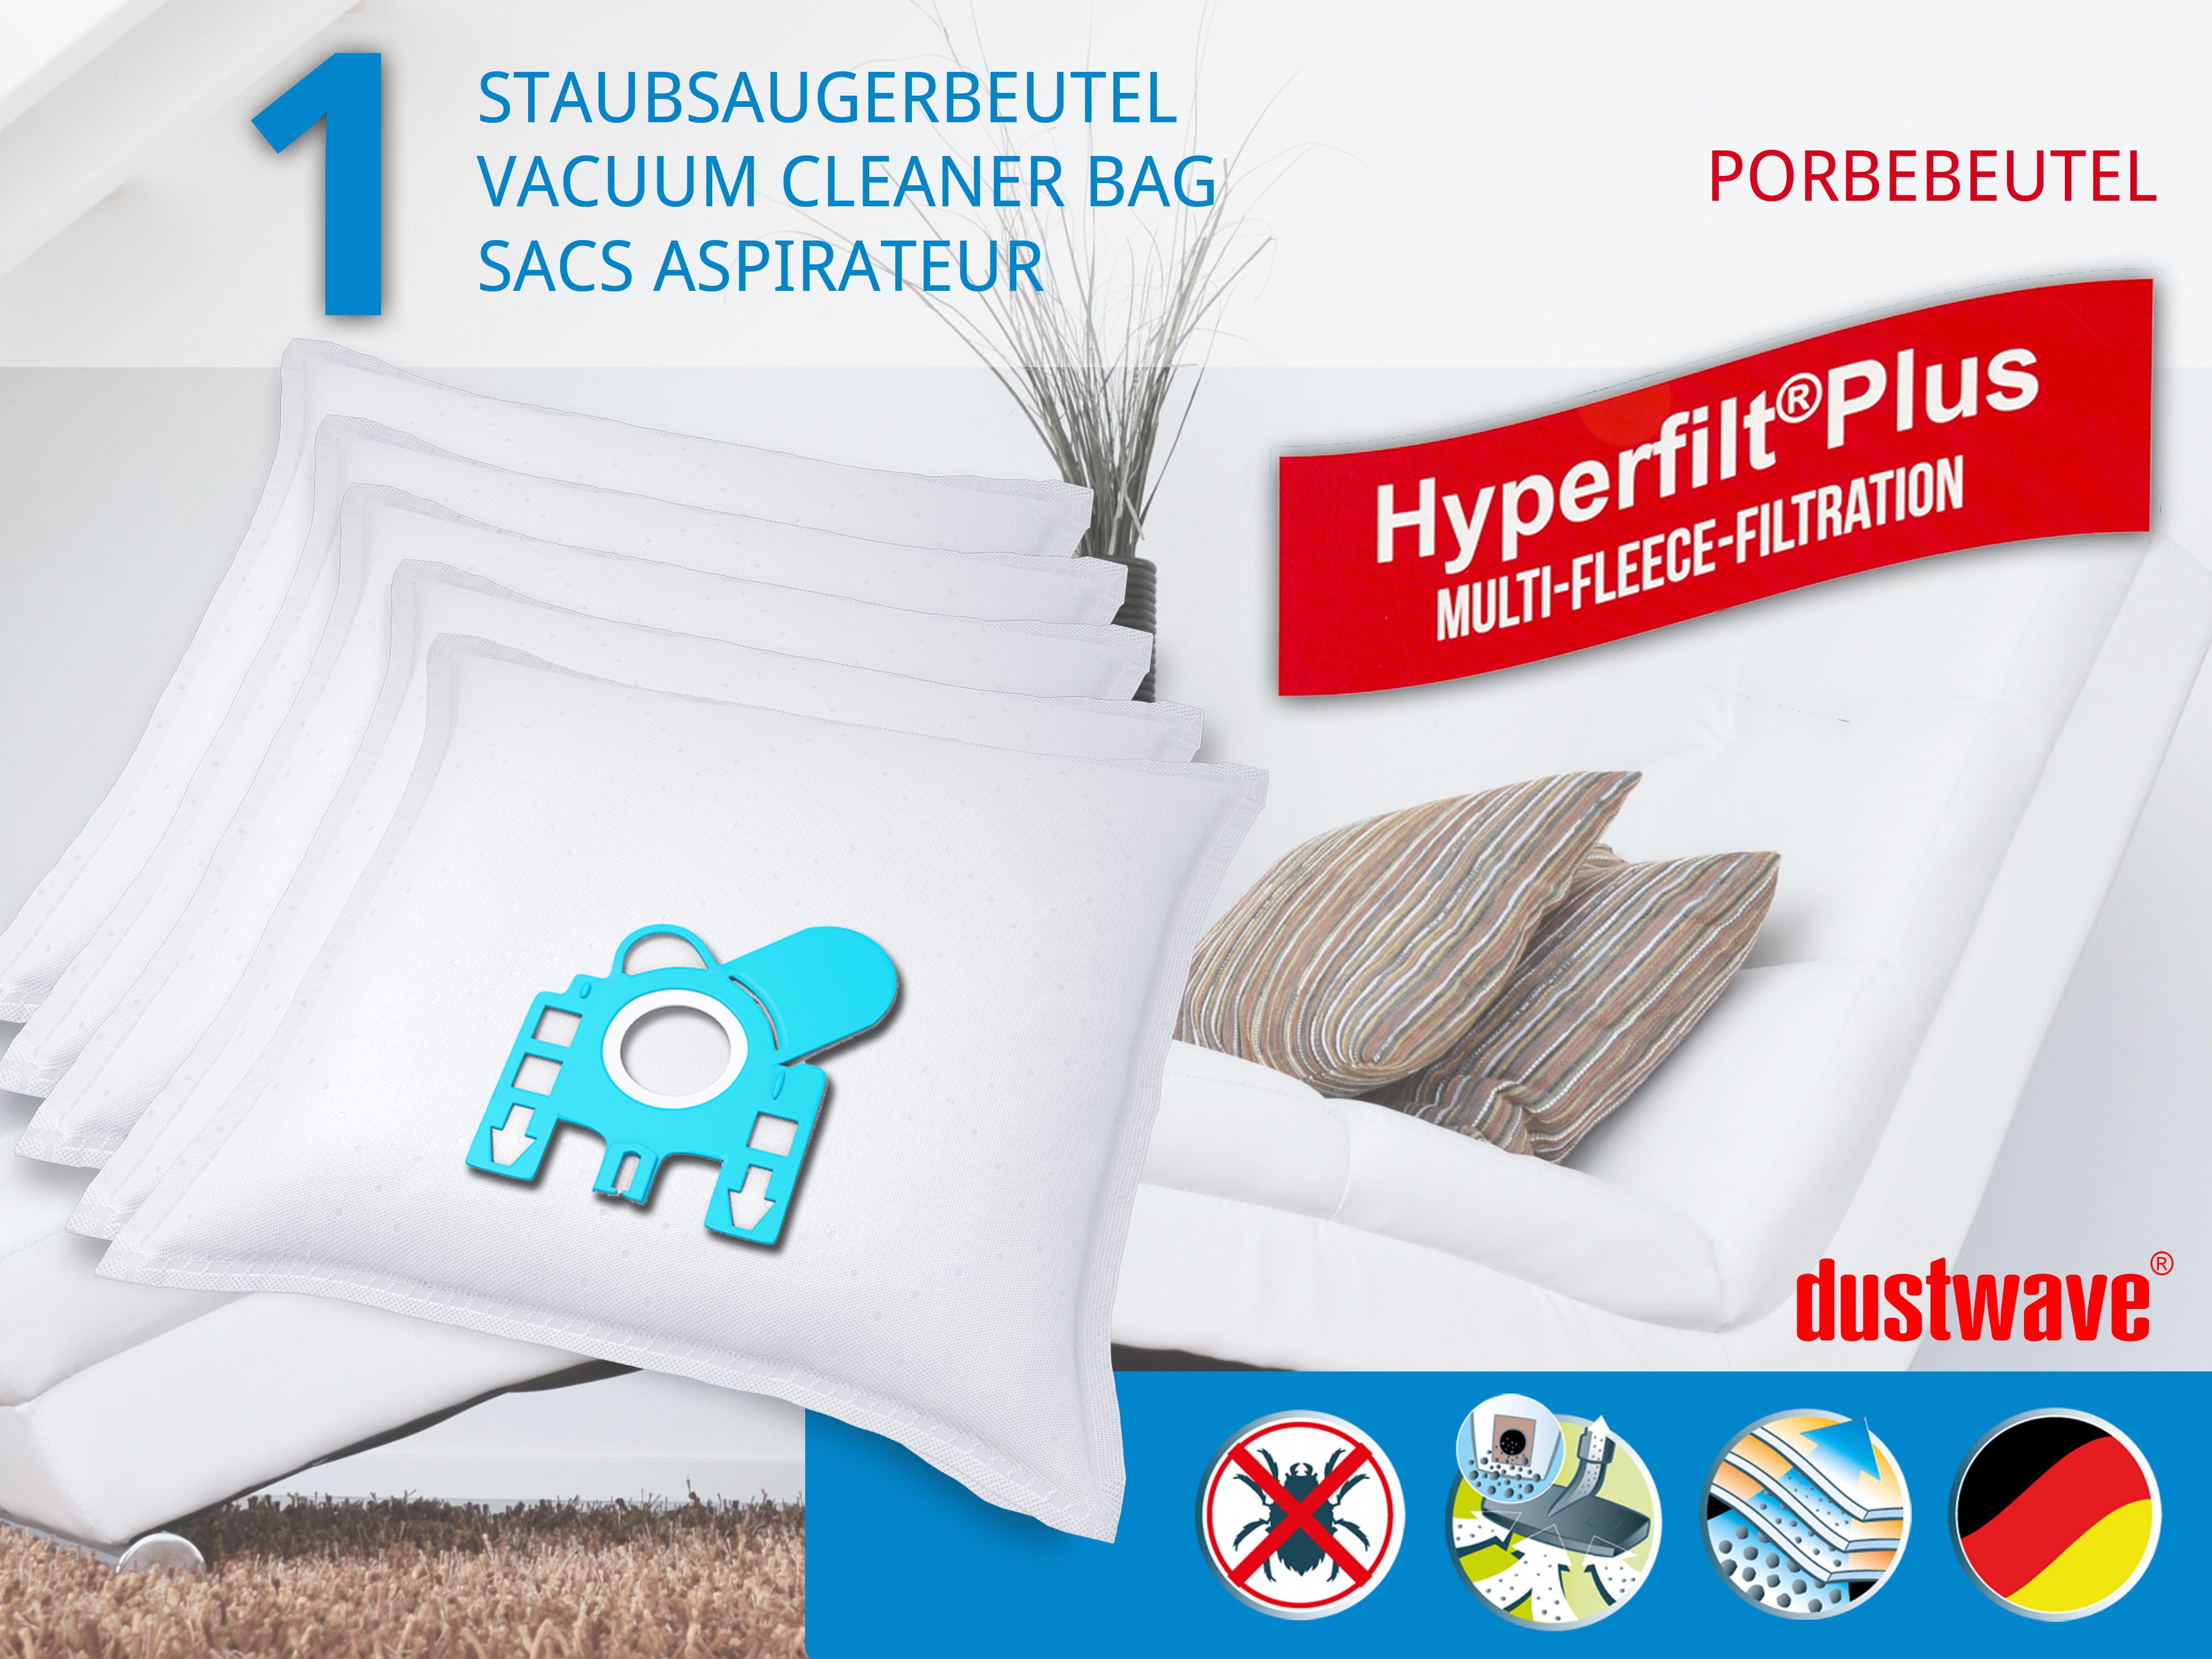 Dustwave® 1 Staubsaugerbeutel für Hoover 39100094 - hocheffizient, mehrlagiges Mikrovlies mit Hygieneverschluss - Made in Germany